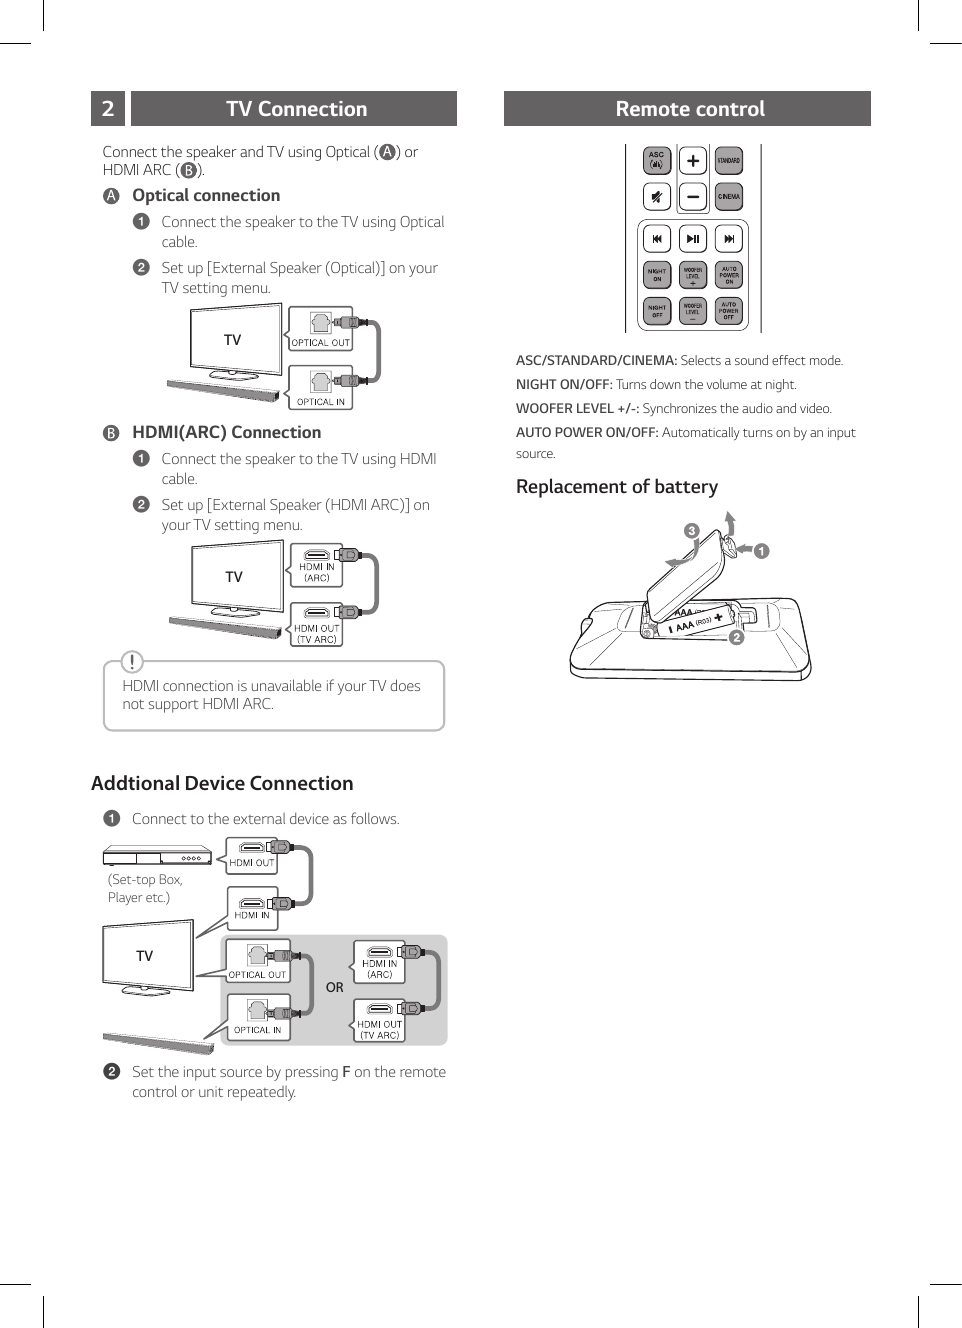 Page 4 of 8 - LG SHC4 User Manual Guide SH4.DUSALL5 SIM ENG MFL69392897-FFR